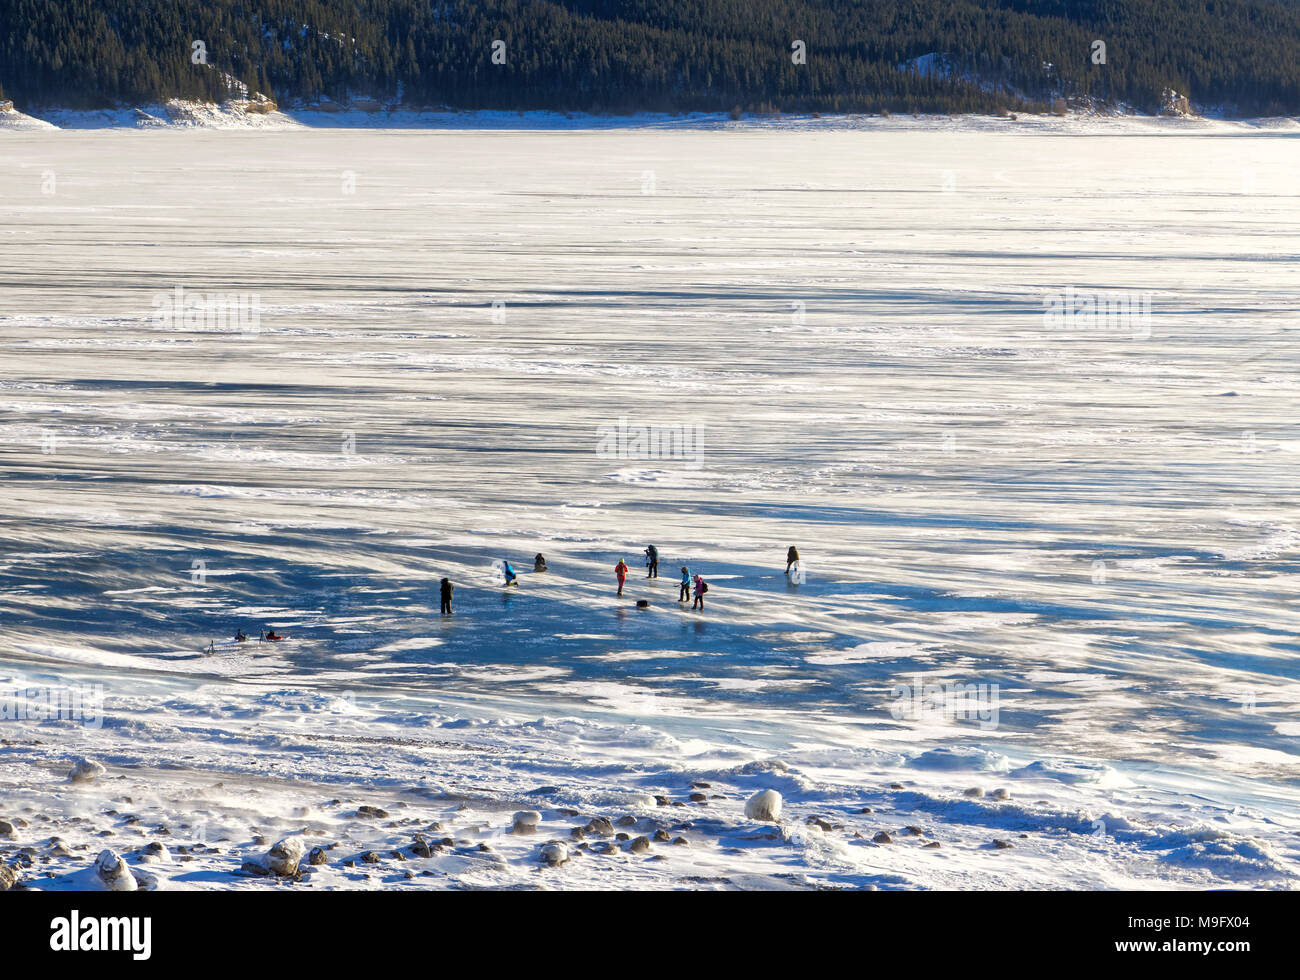 42,747.08406 snowy Abraham Lake mit Blue Ice, 8 entfernte Fotografen bei der Arbeit fotografieren Eis blasen, Nordegg, Alberta Kanada, Nordamerika Stockfoto